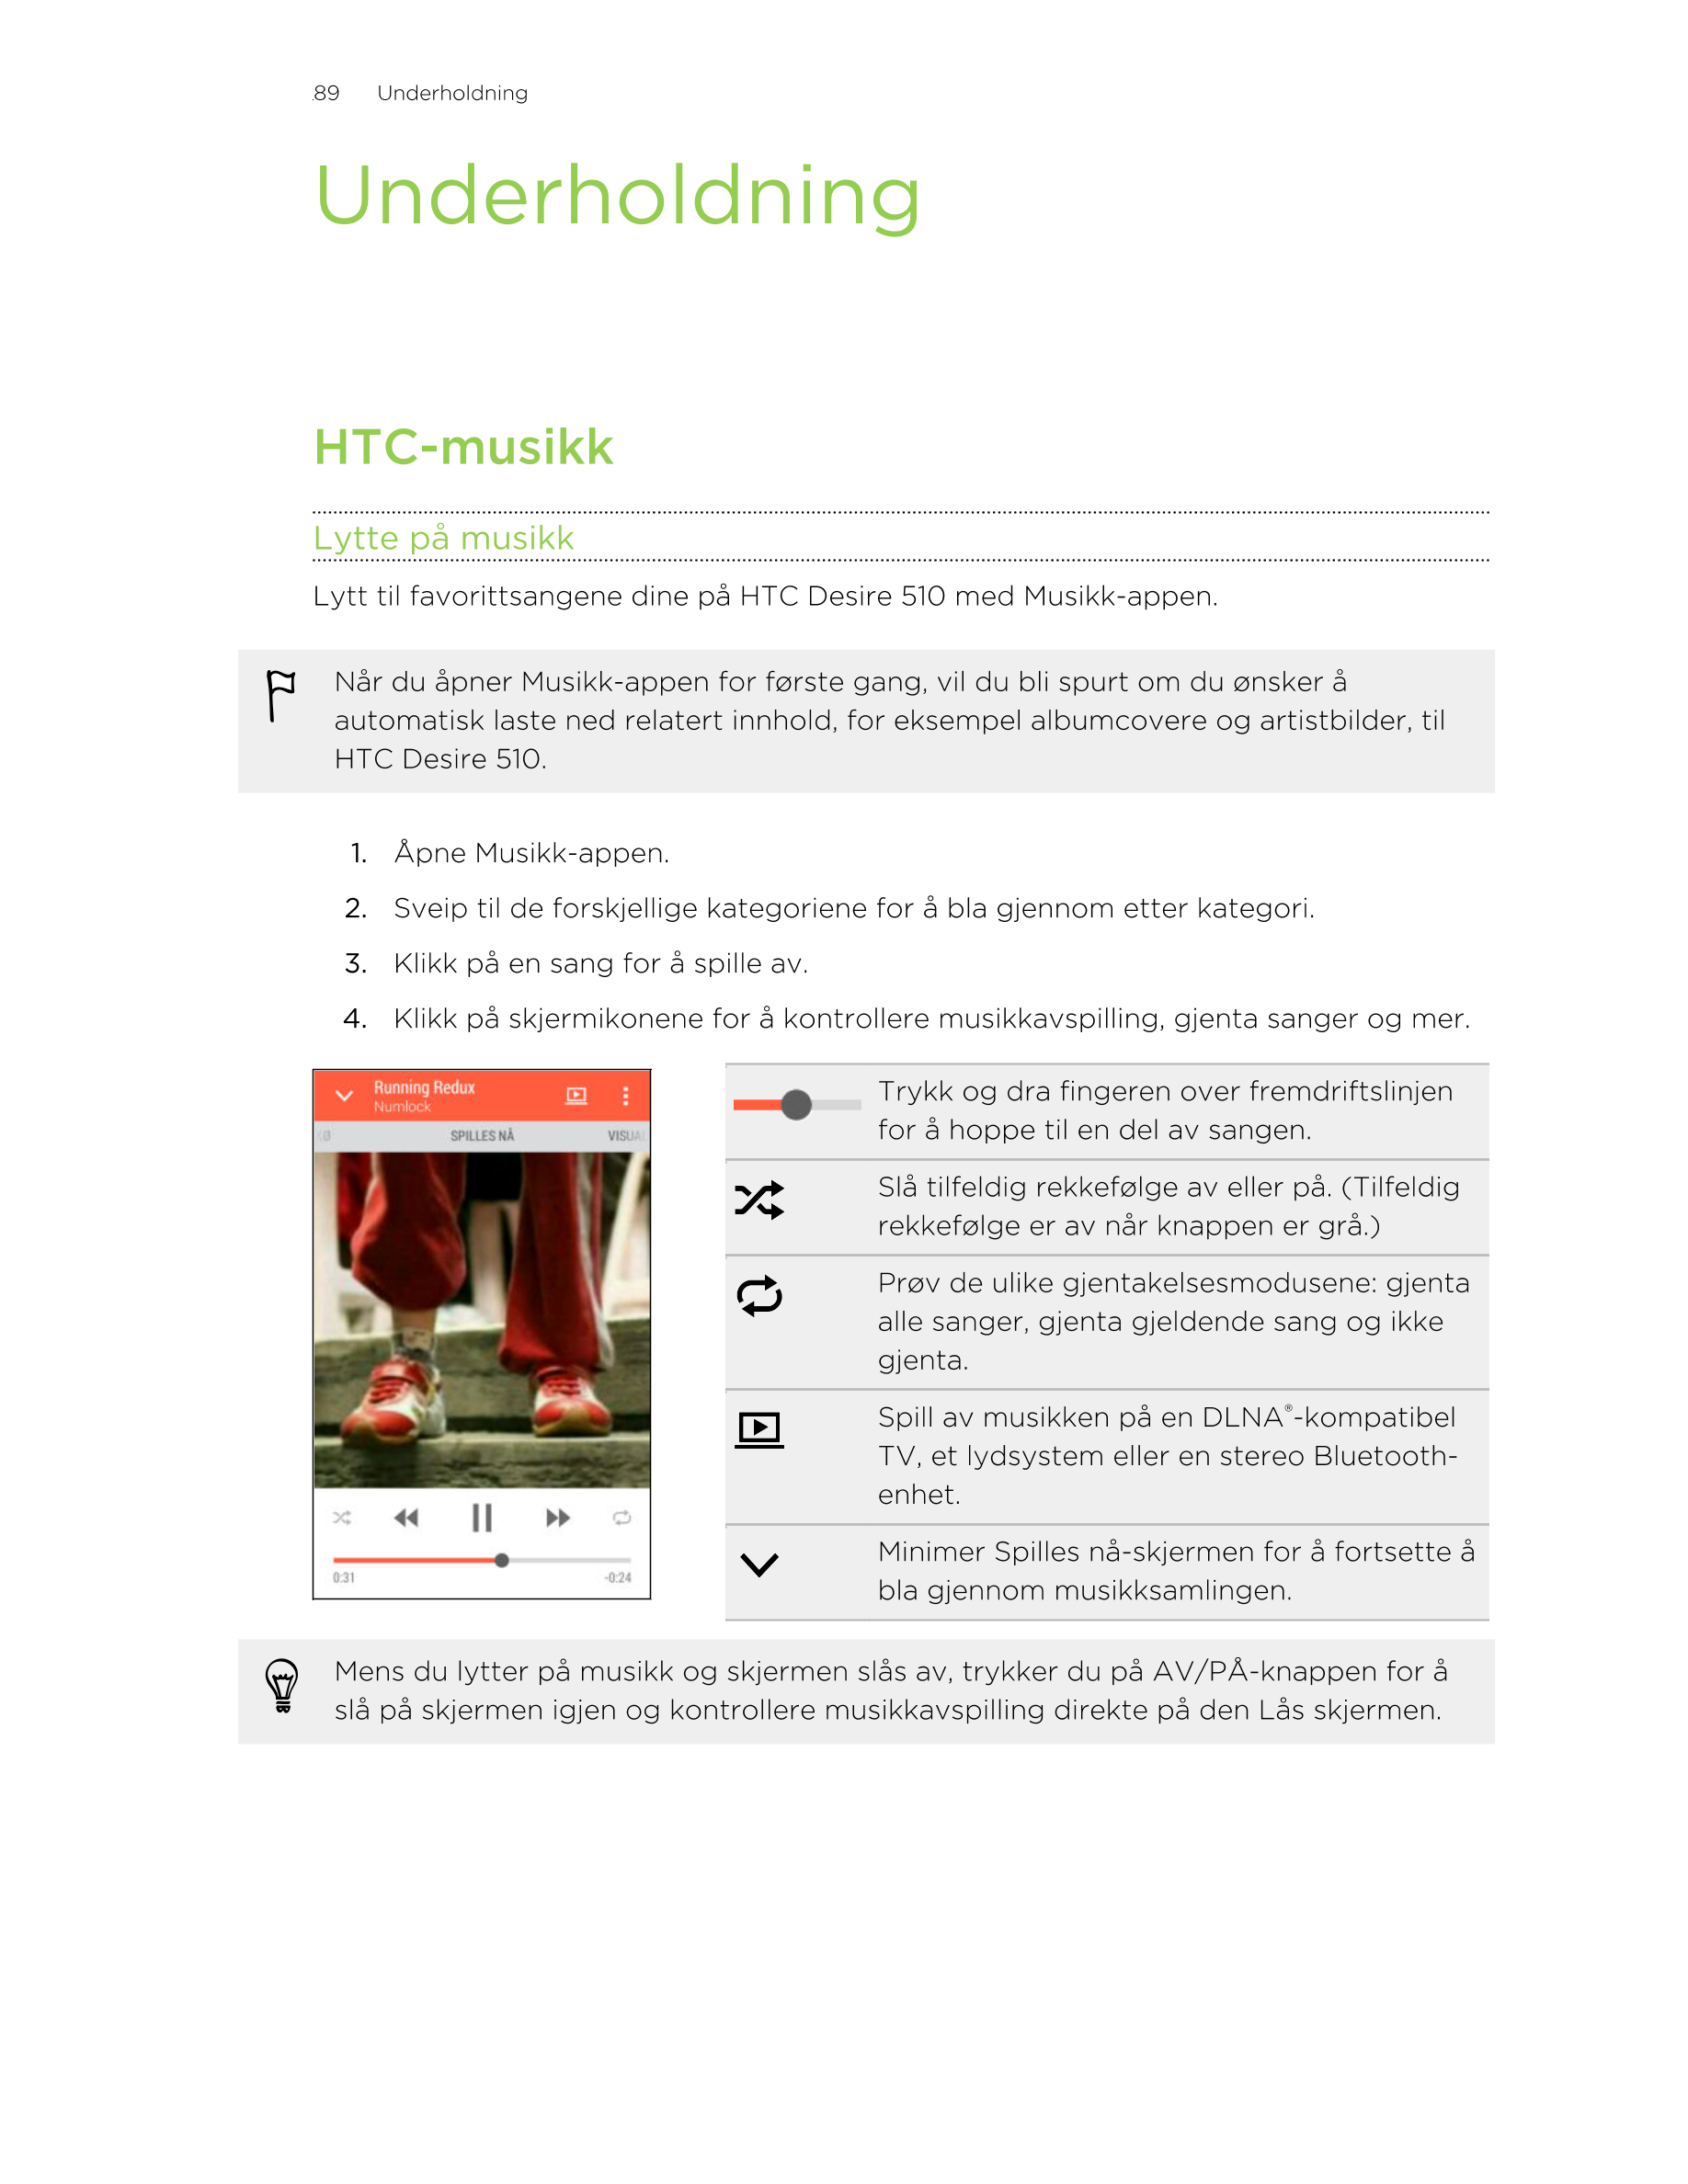 89      Underholdning
Underholdning
HTC-musikk
Lytte på musikk
Lytt til favorittsangene dine på HTC Desire 510 med Musikk-appen.